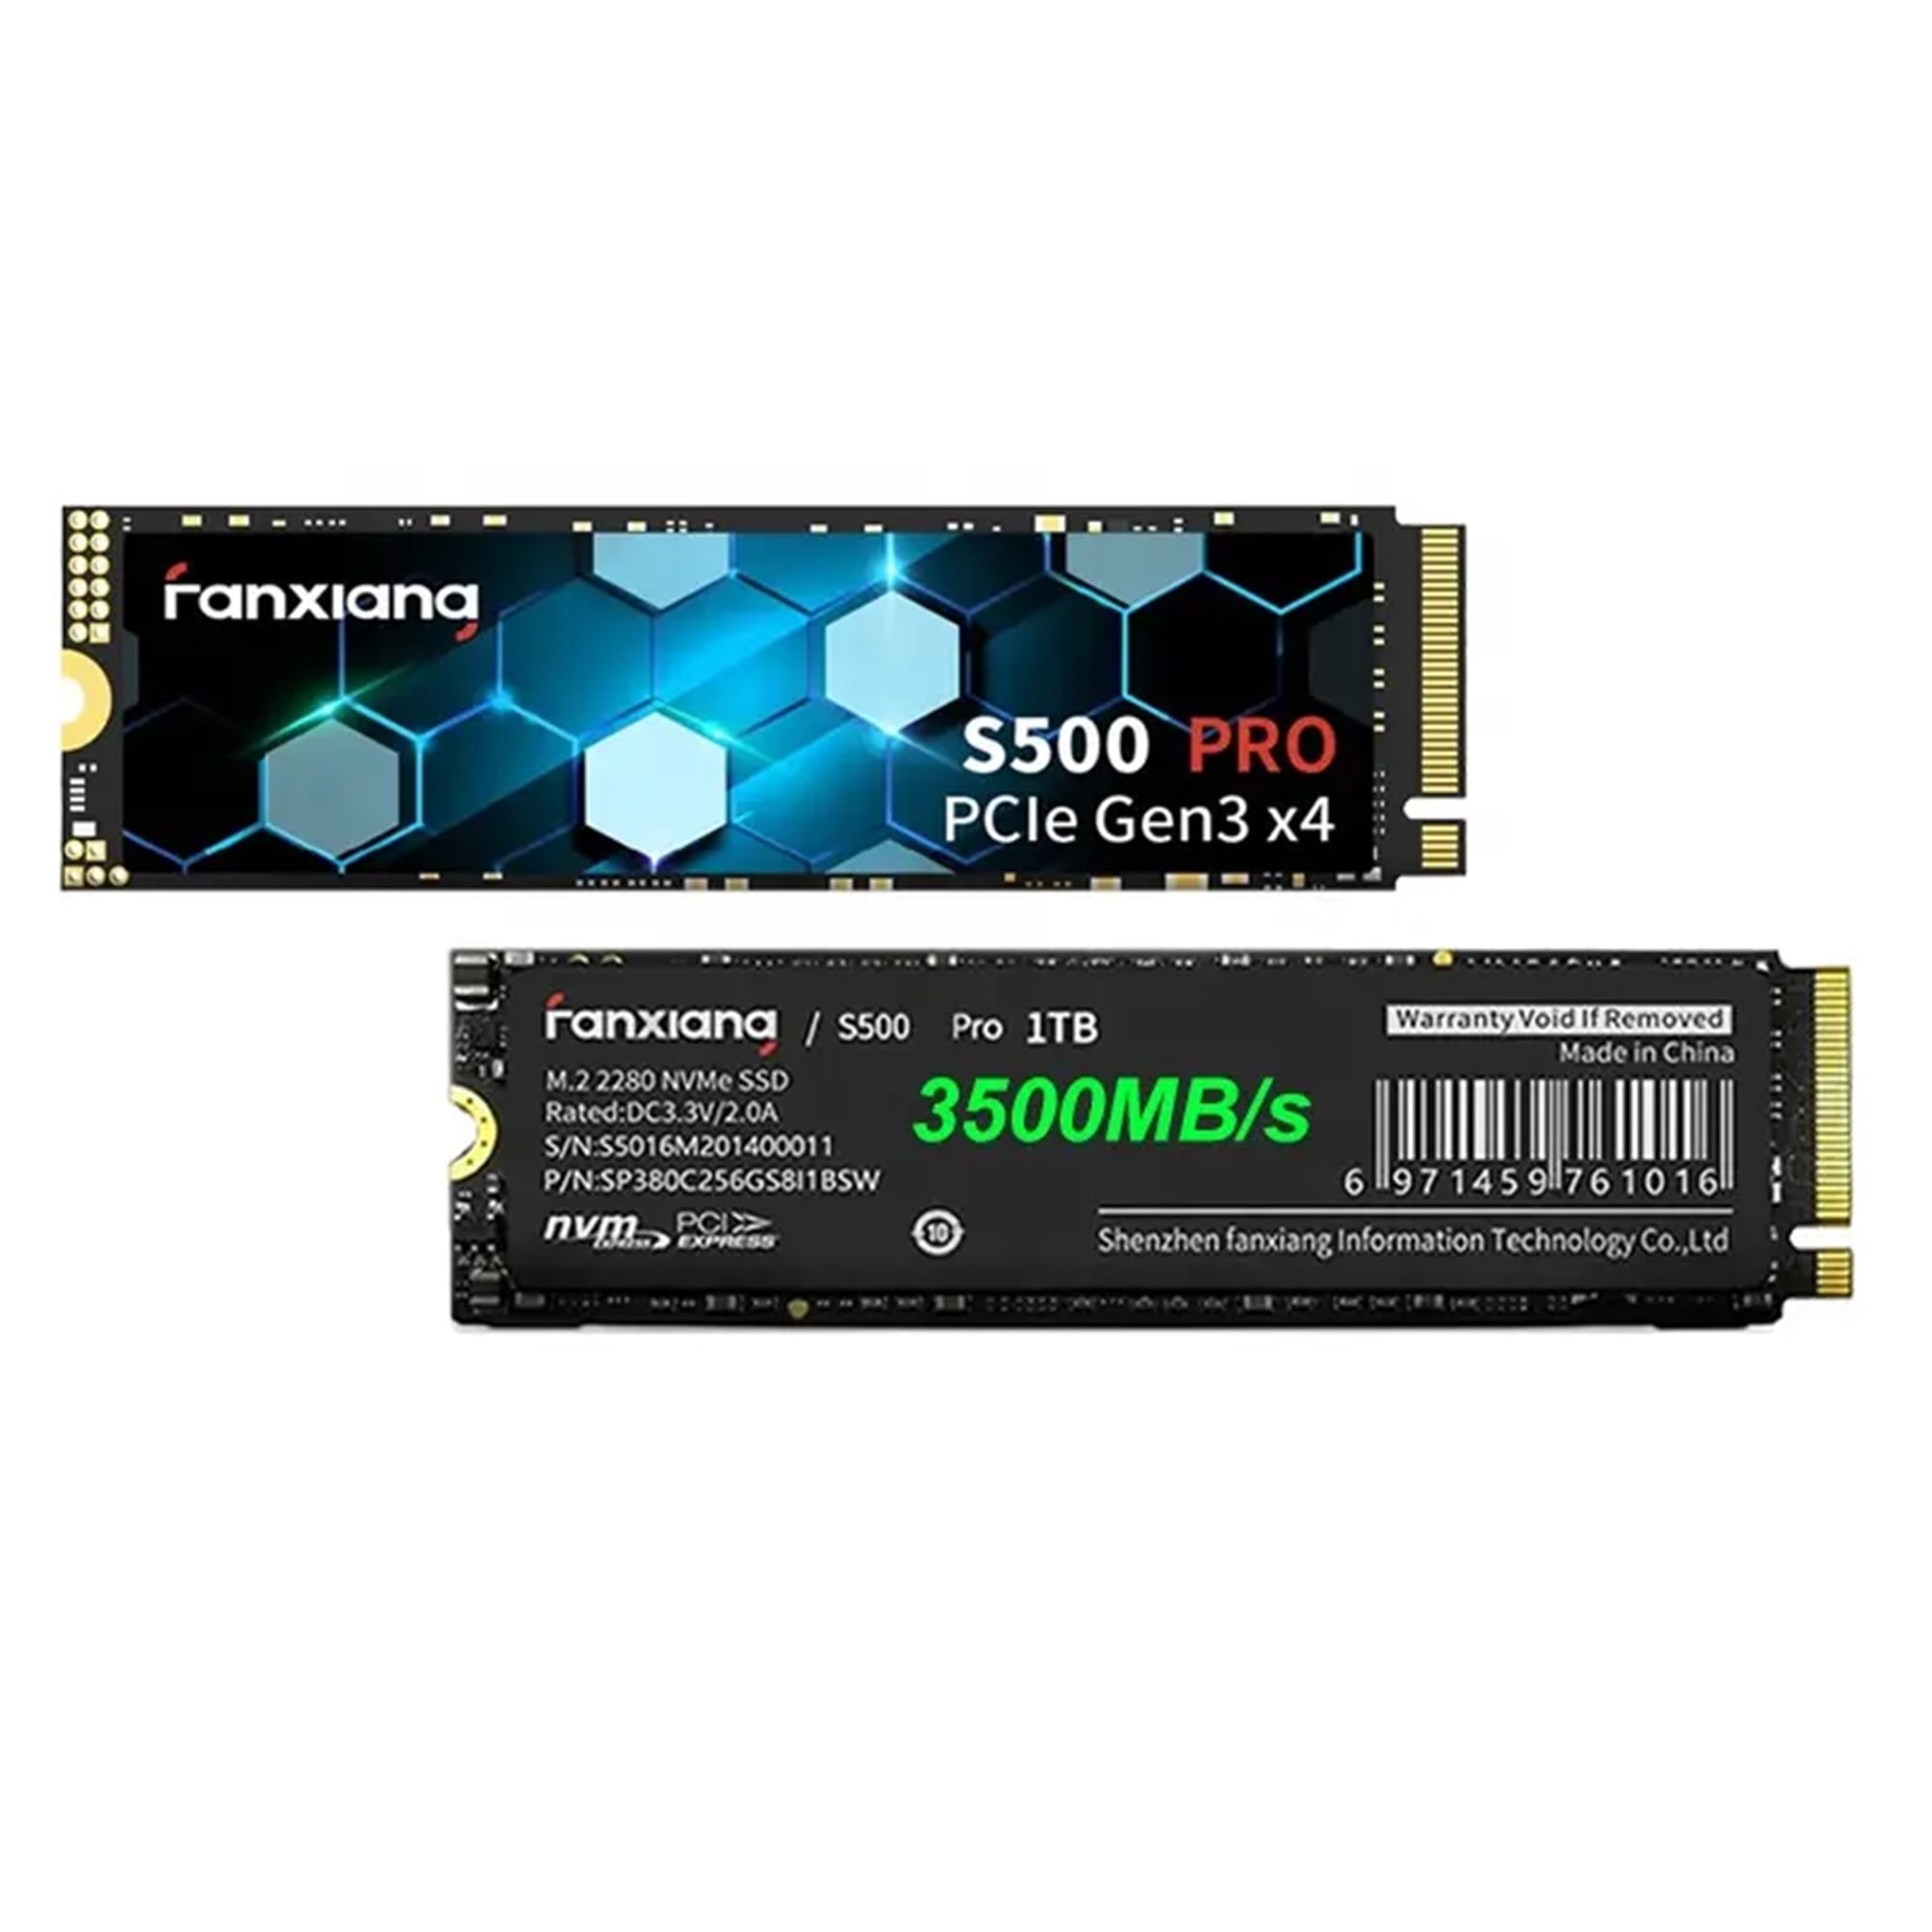 fanxiang S500 Pro 2TB NVMe SSD m.2 PCIe Gen3x4 2280 Internal Solid